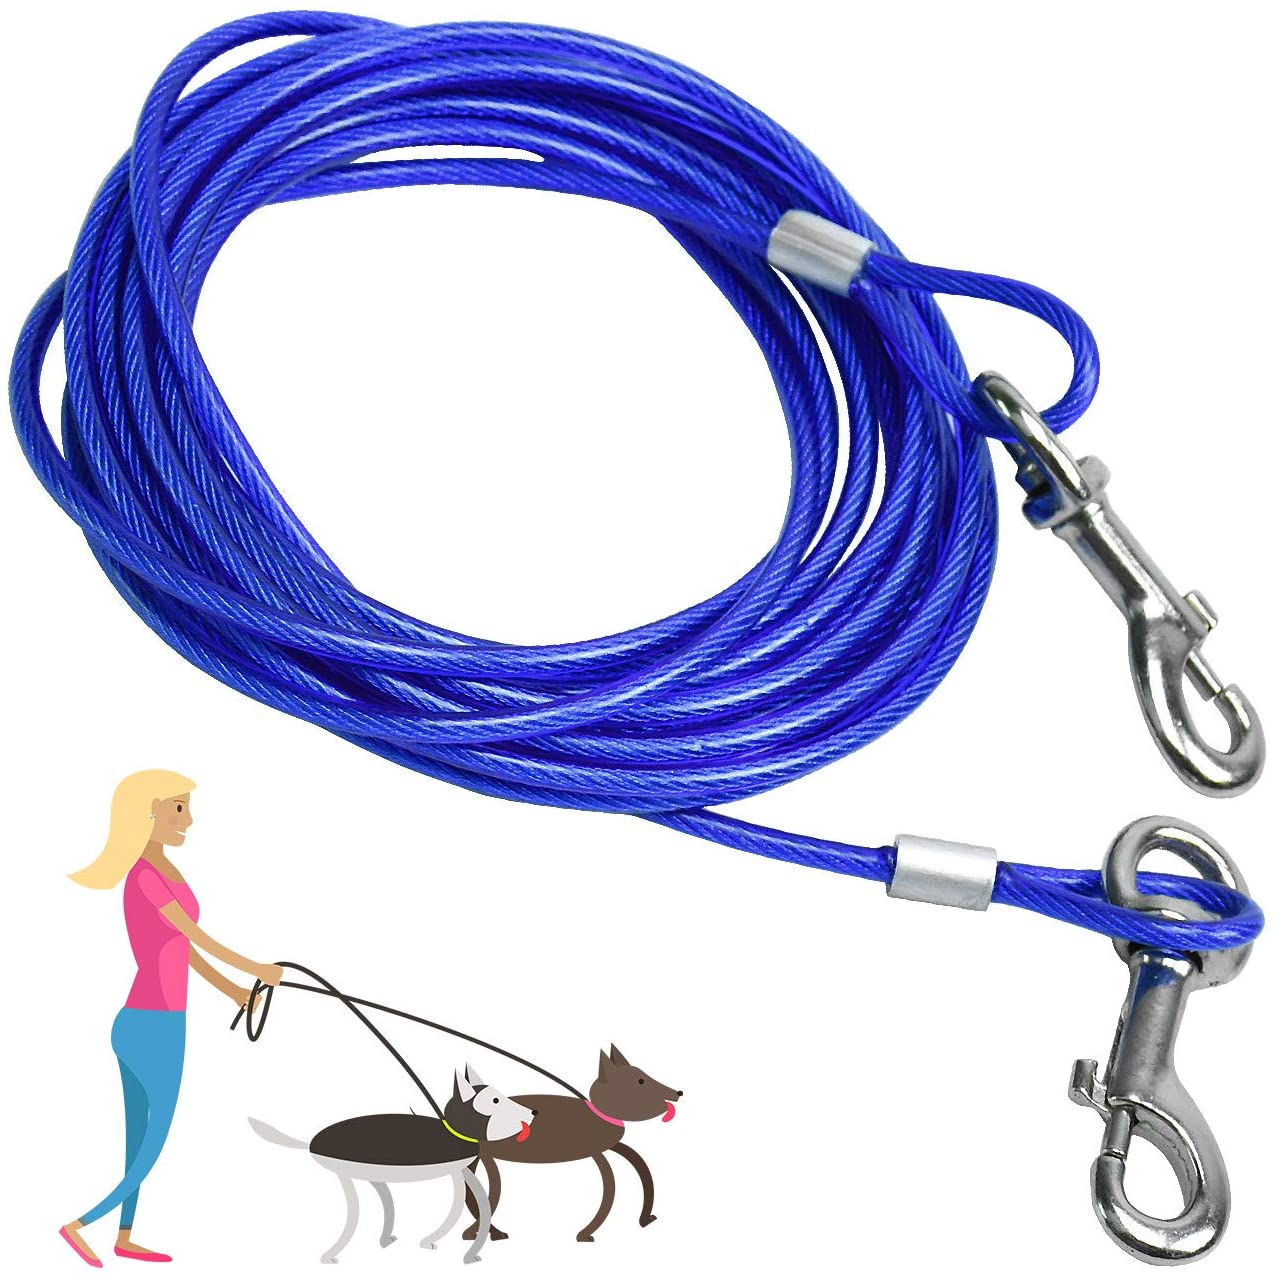  SANTOO 5M Cable para Atar Perros, Cuerda de Seguridad Cabezas Dobles para Mascotas hasta 45 kg 